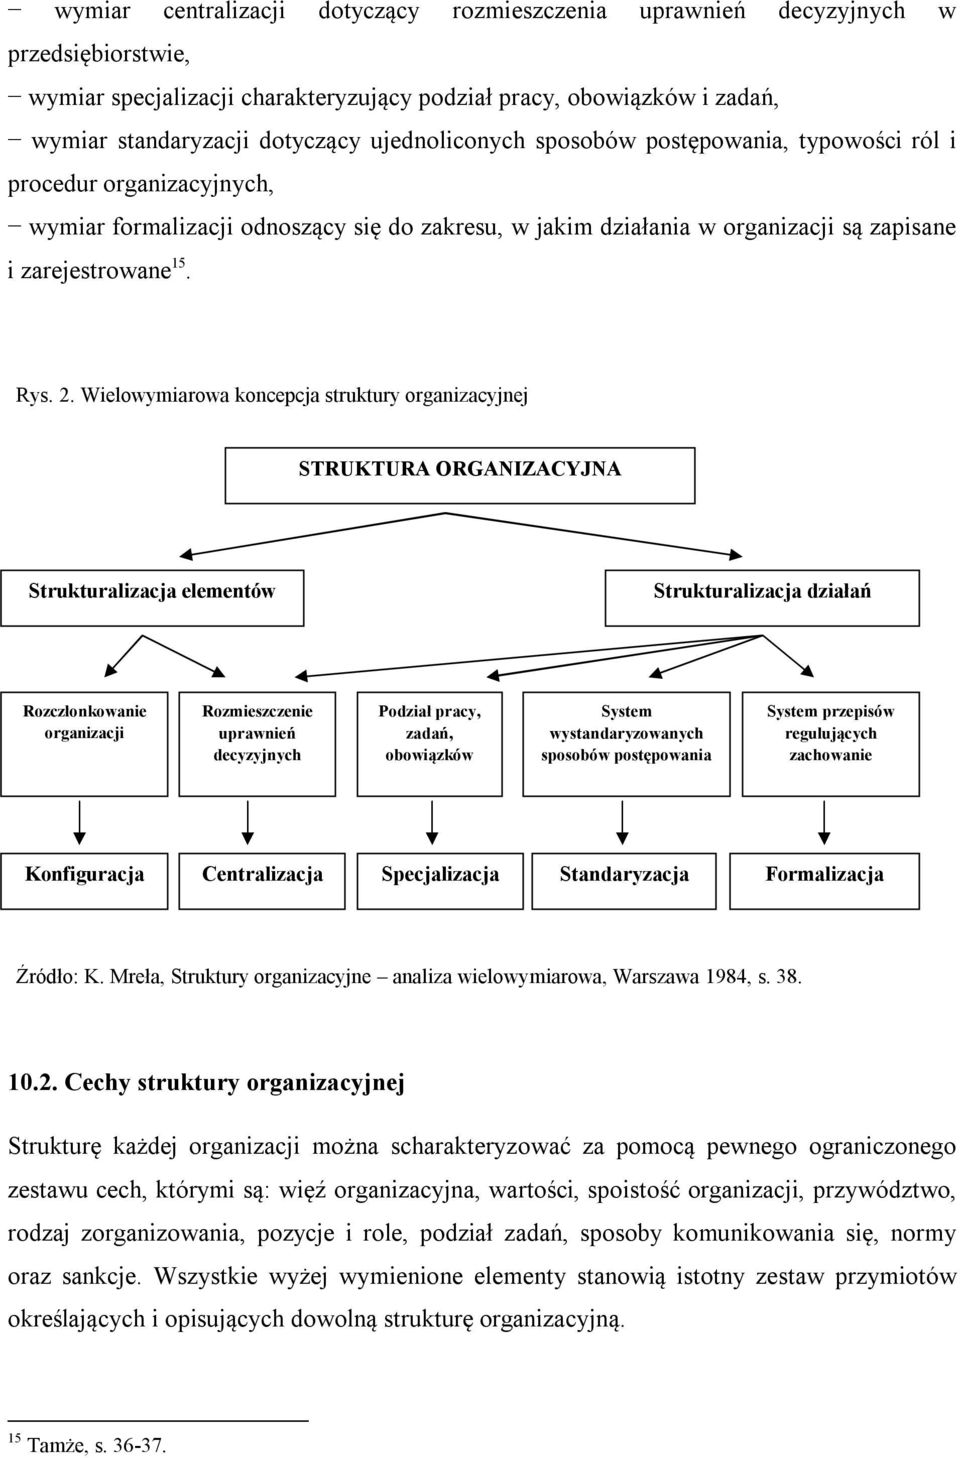 Wielowymiarowa koncepcja struktury organizacyjnej STRUKTURA ORGANIZACYJNA Strukturalizacja elementów Strukturalizacja działań Rozczłonkowanie organizacji Rozmieszczenie uprawnień decyzyjnych Podział